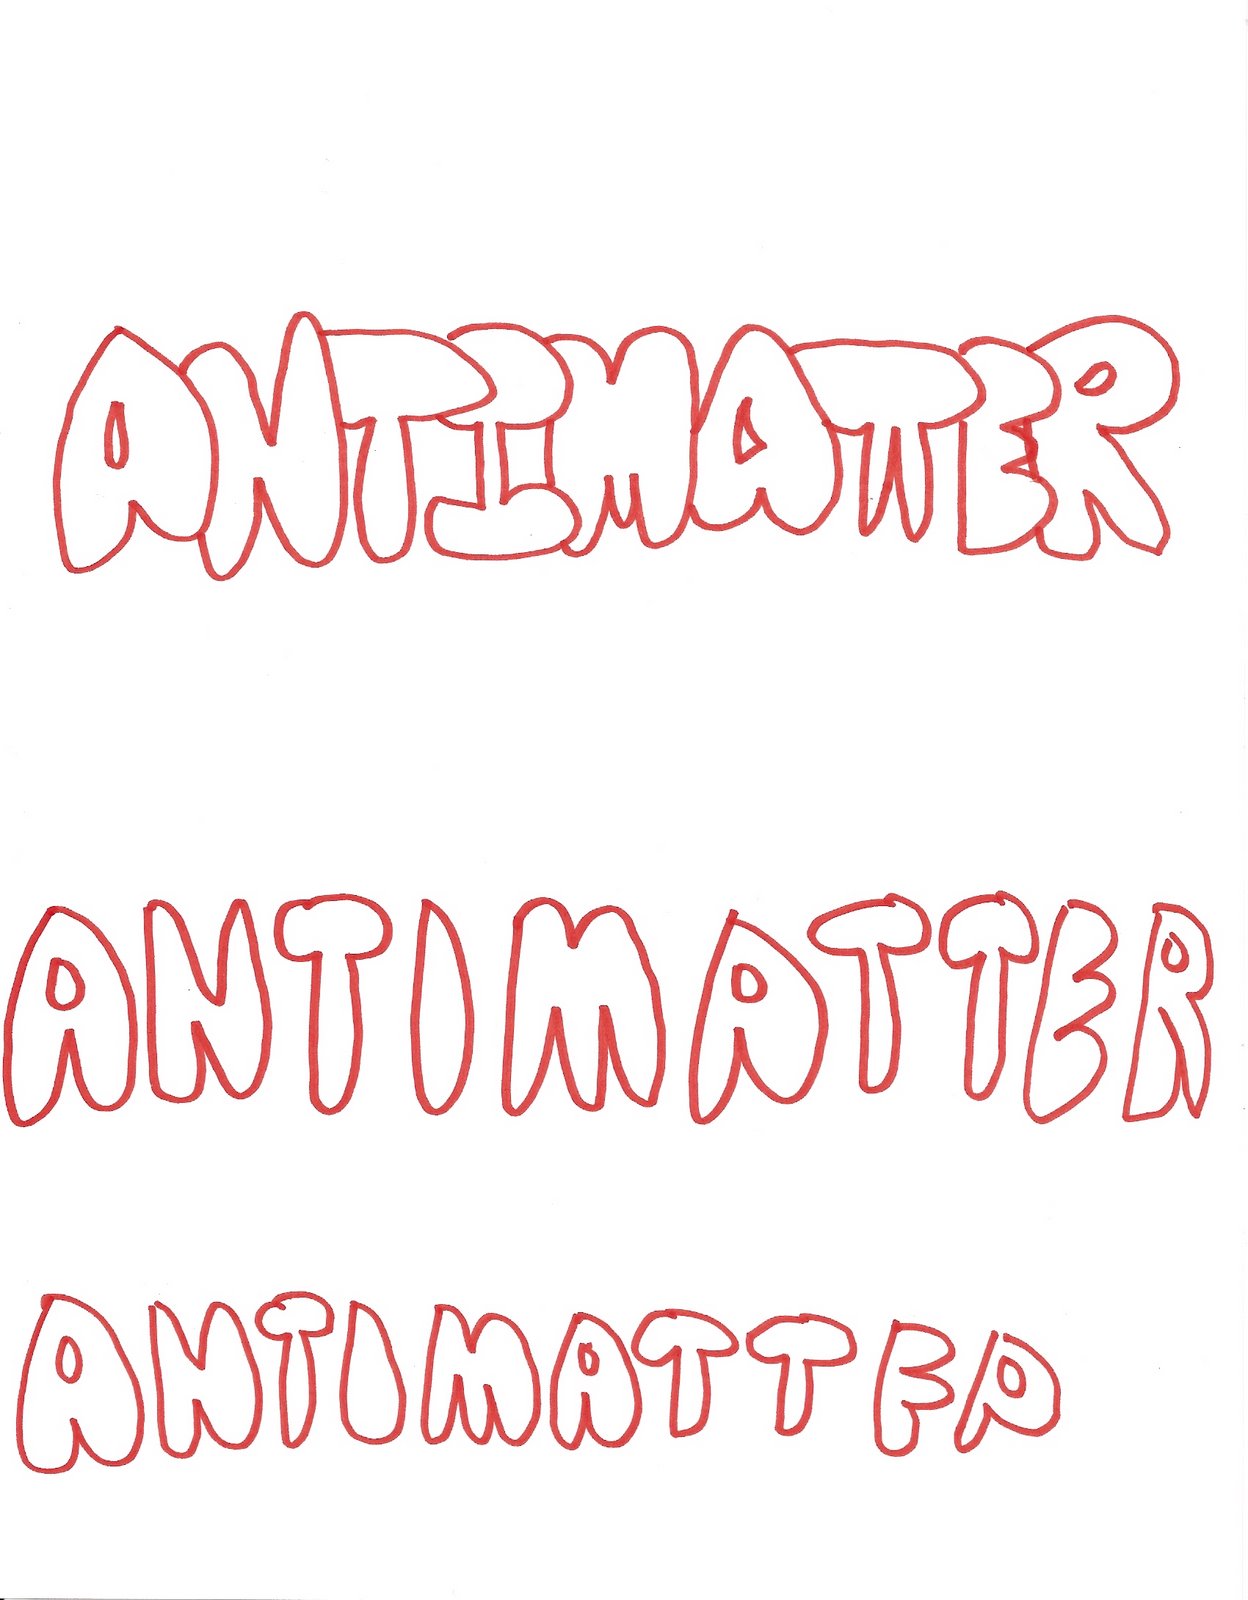 [antimatter.jpg]